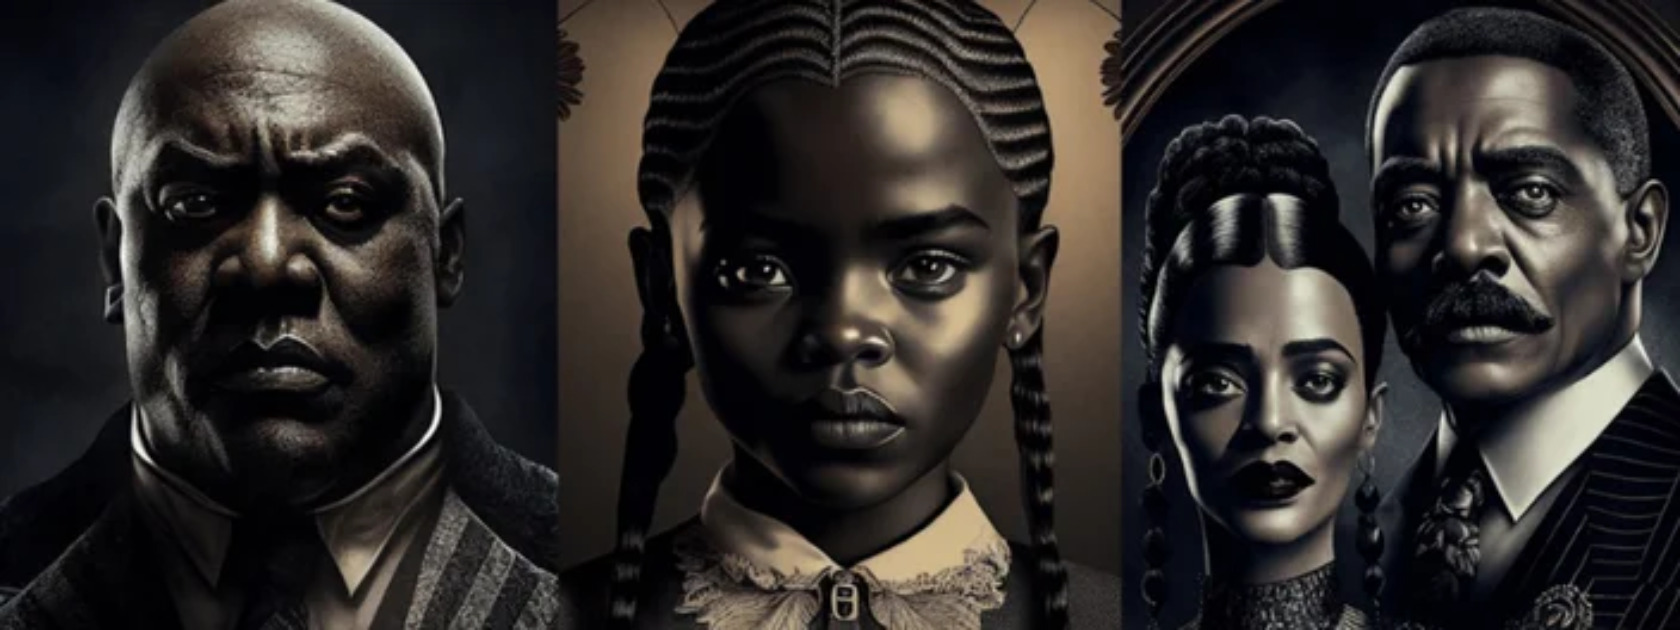 Representatividade: artista recria a Família Addams com personagens negros